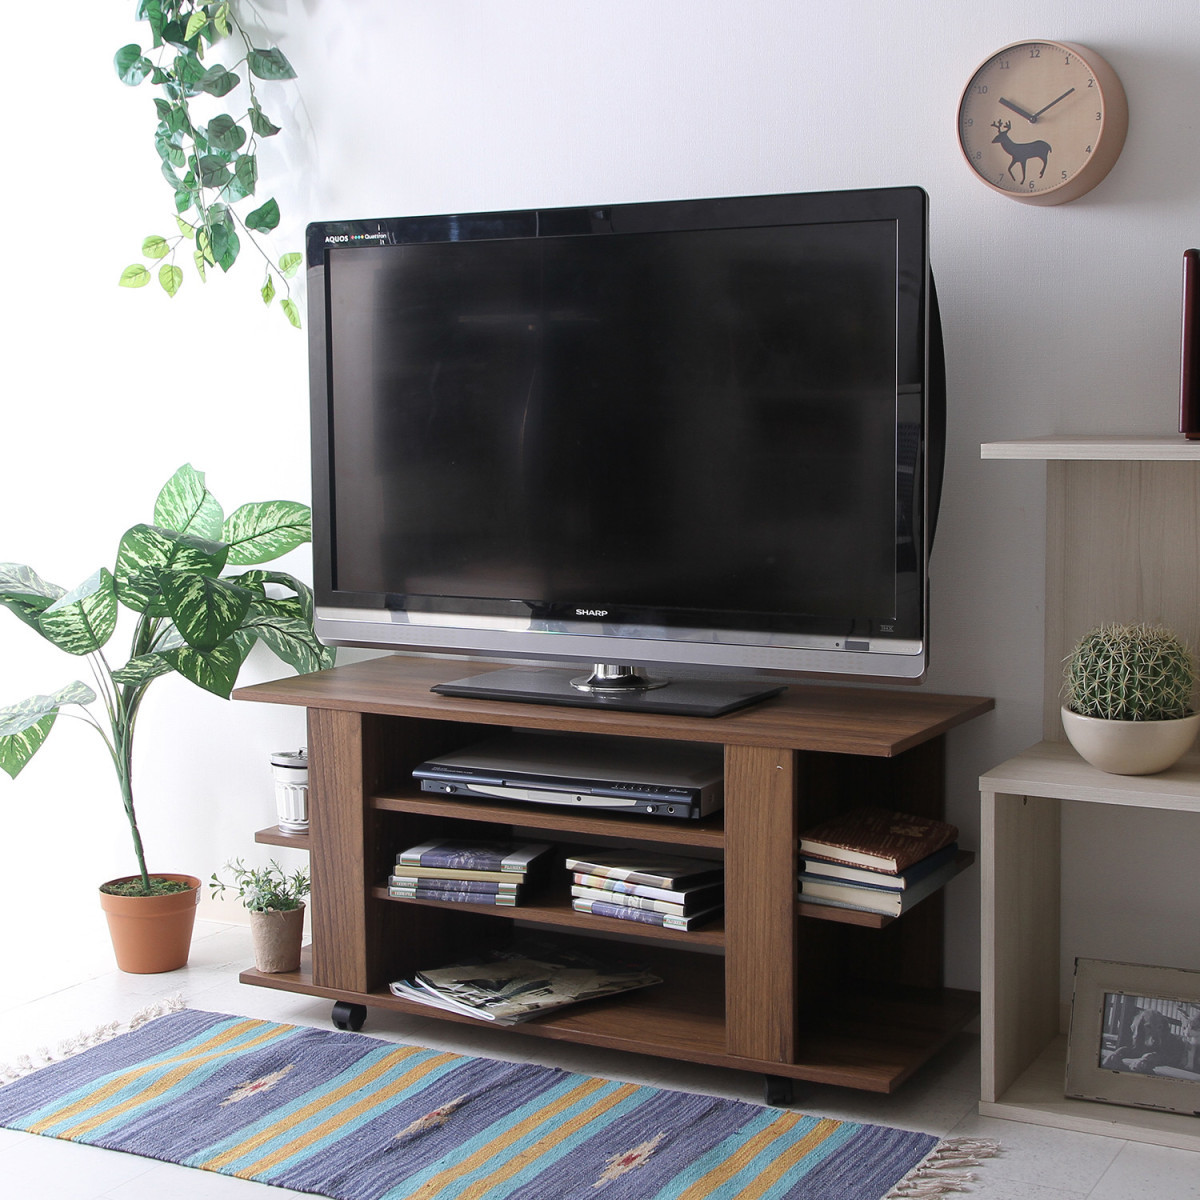  ТВ-тумба телевизор подставка medium Brown ширина 100cm[ новый товар ][ бесплатная доставка ]( Hokkaido Okinawa отдаленный остров доставка отдельно )